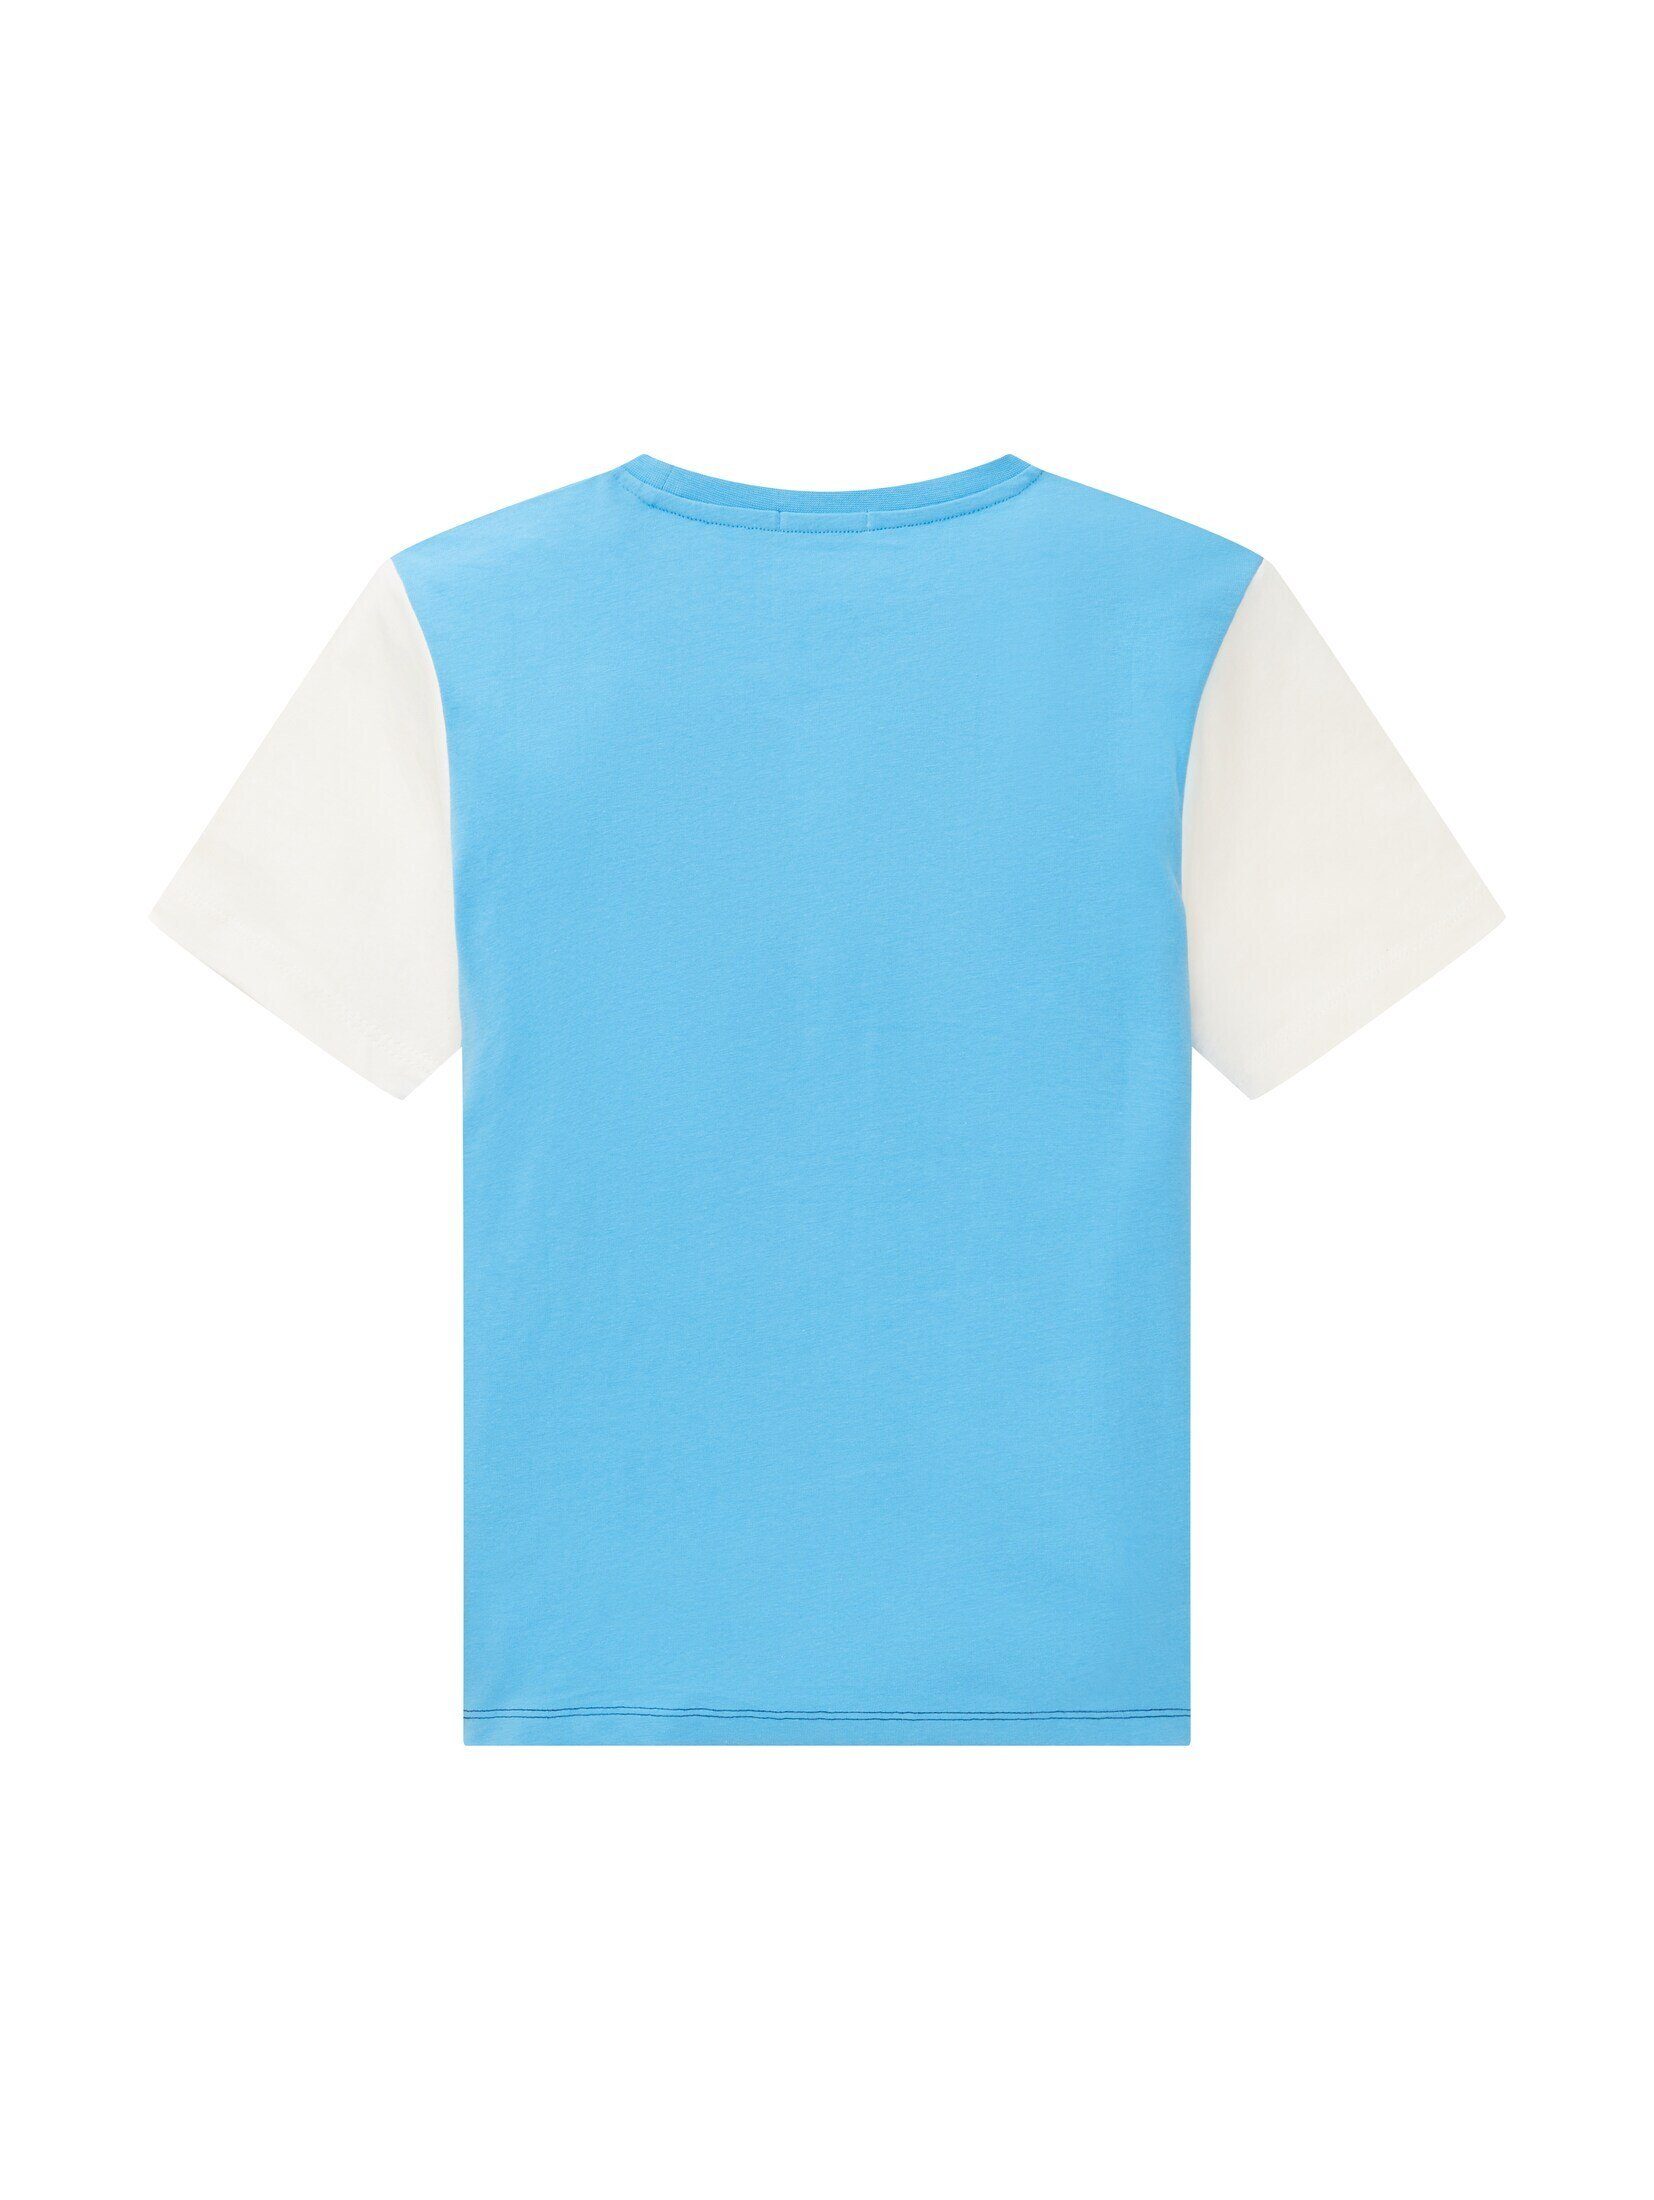 sky Blocking TAILOR blue mit TOM Colour T-Shirt captain T-Shirt